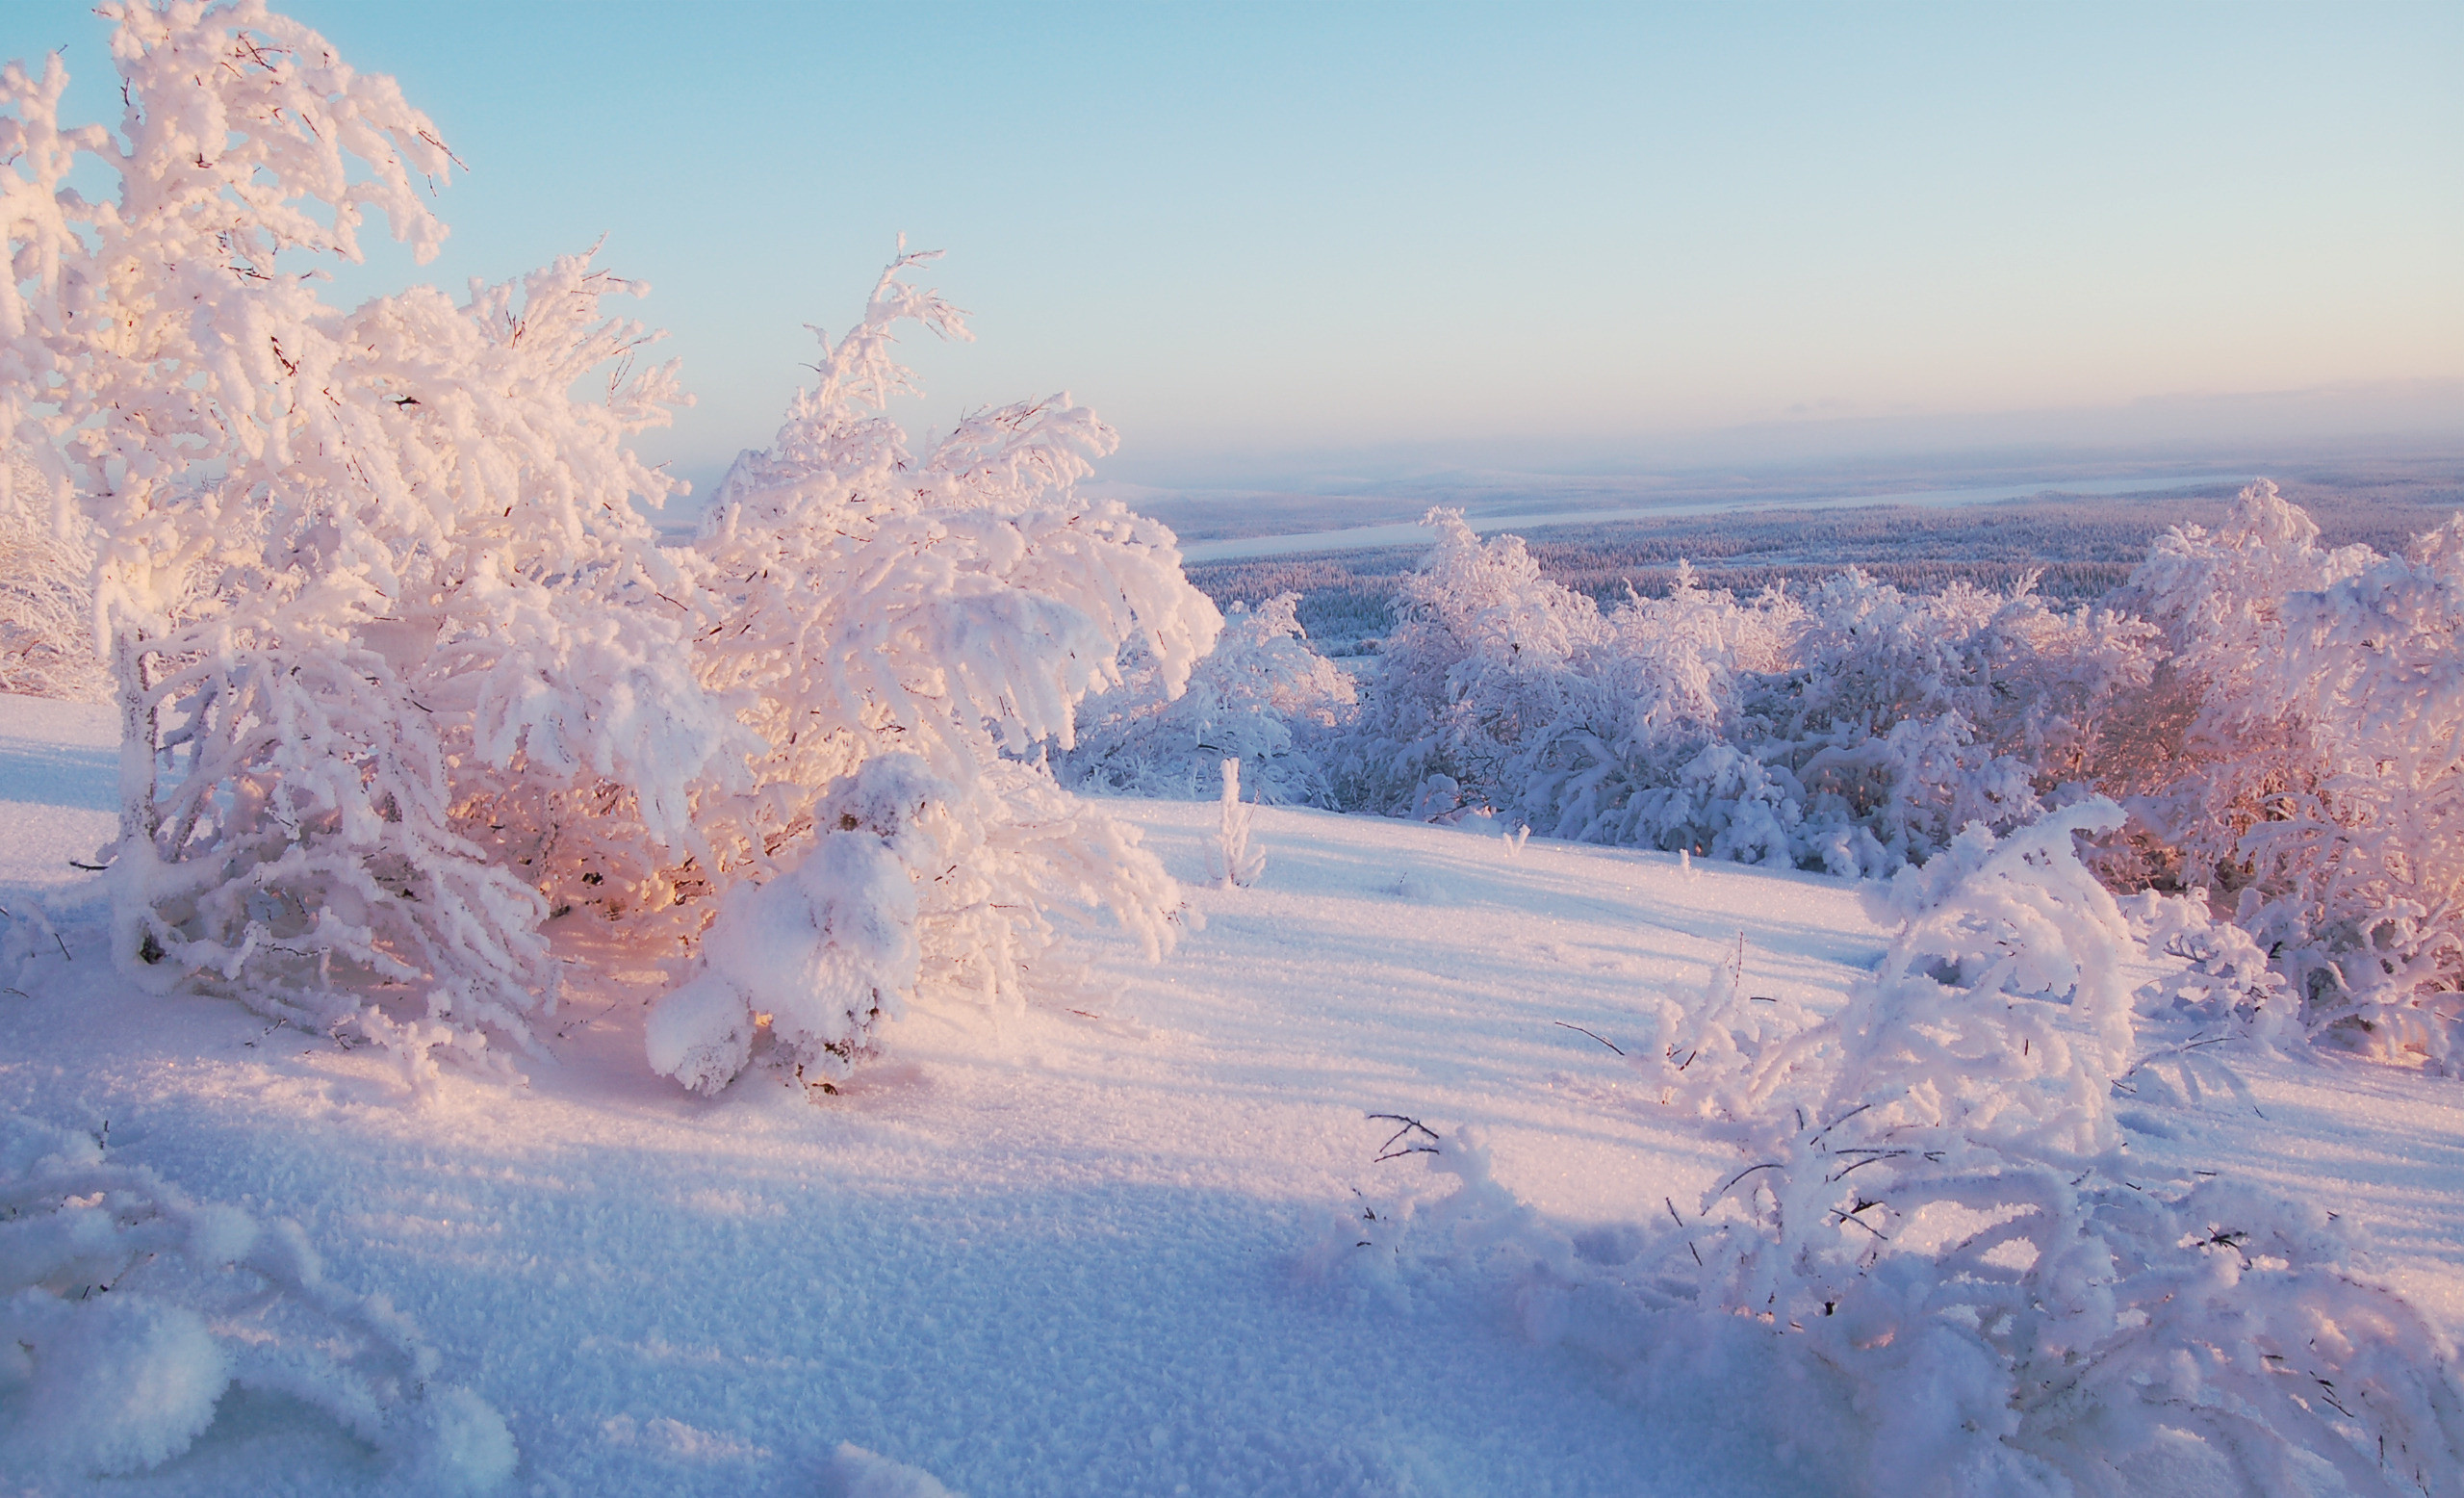 Скачать обои бесплатно Пейзаж, Природа, Зима картинка на рабочий стол ПК